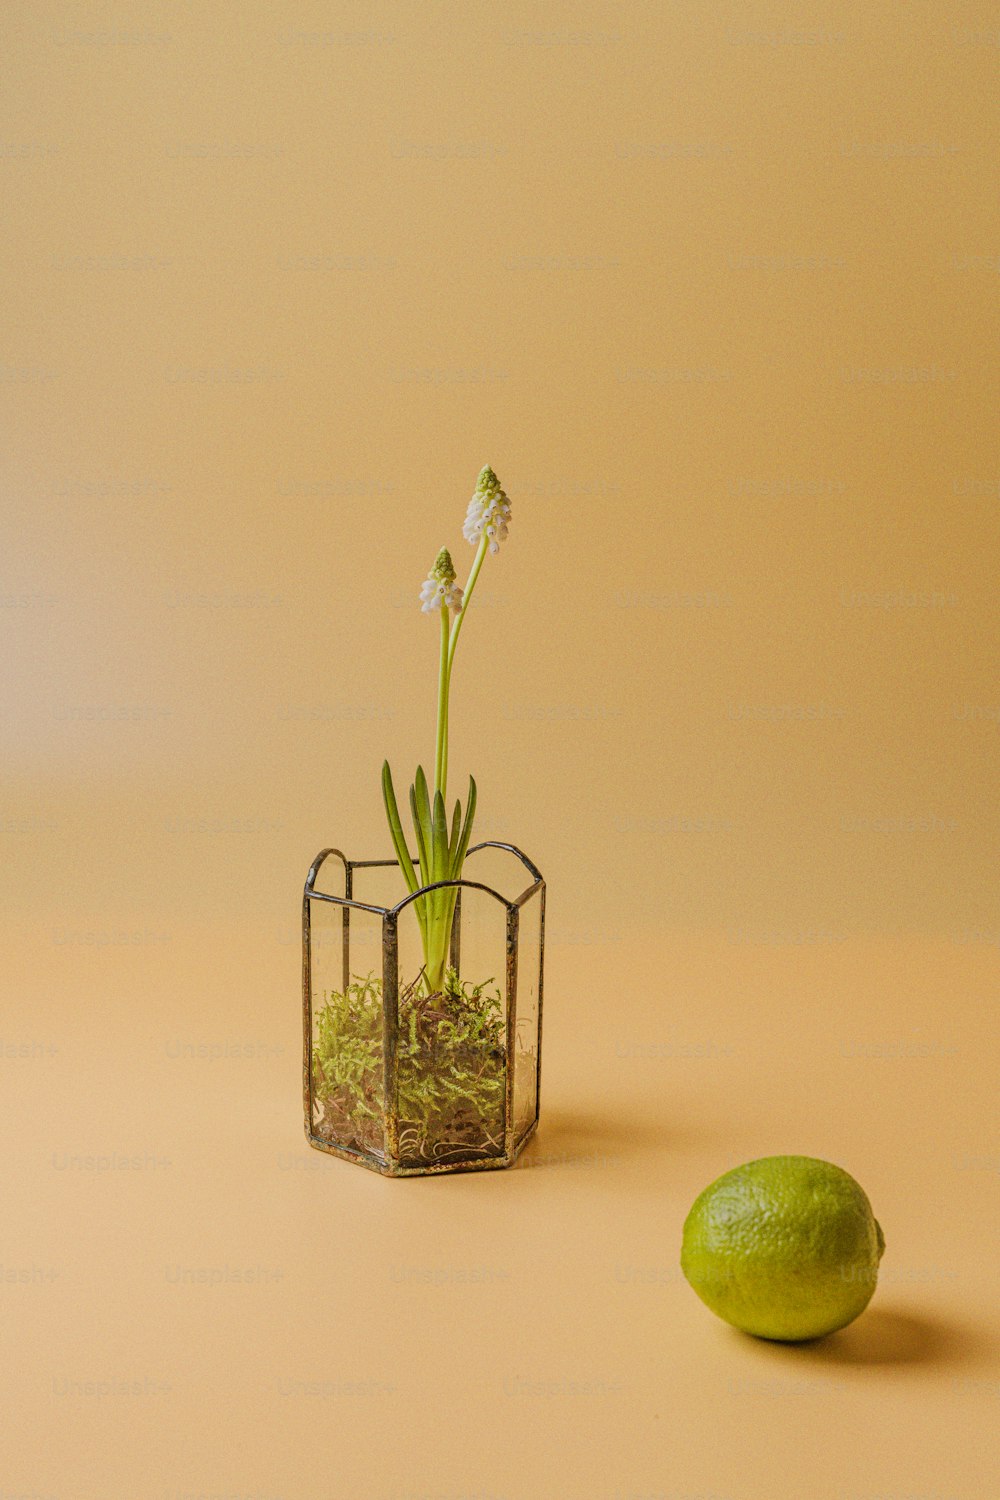 un petit vase en verre avec une plante à côté d’un citron vert